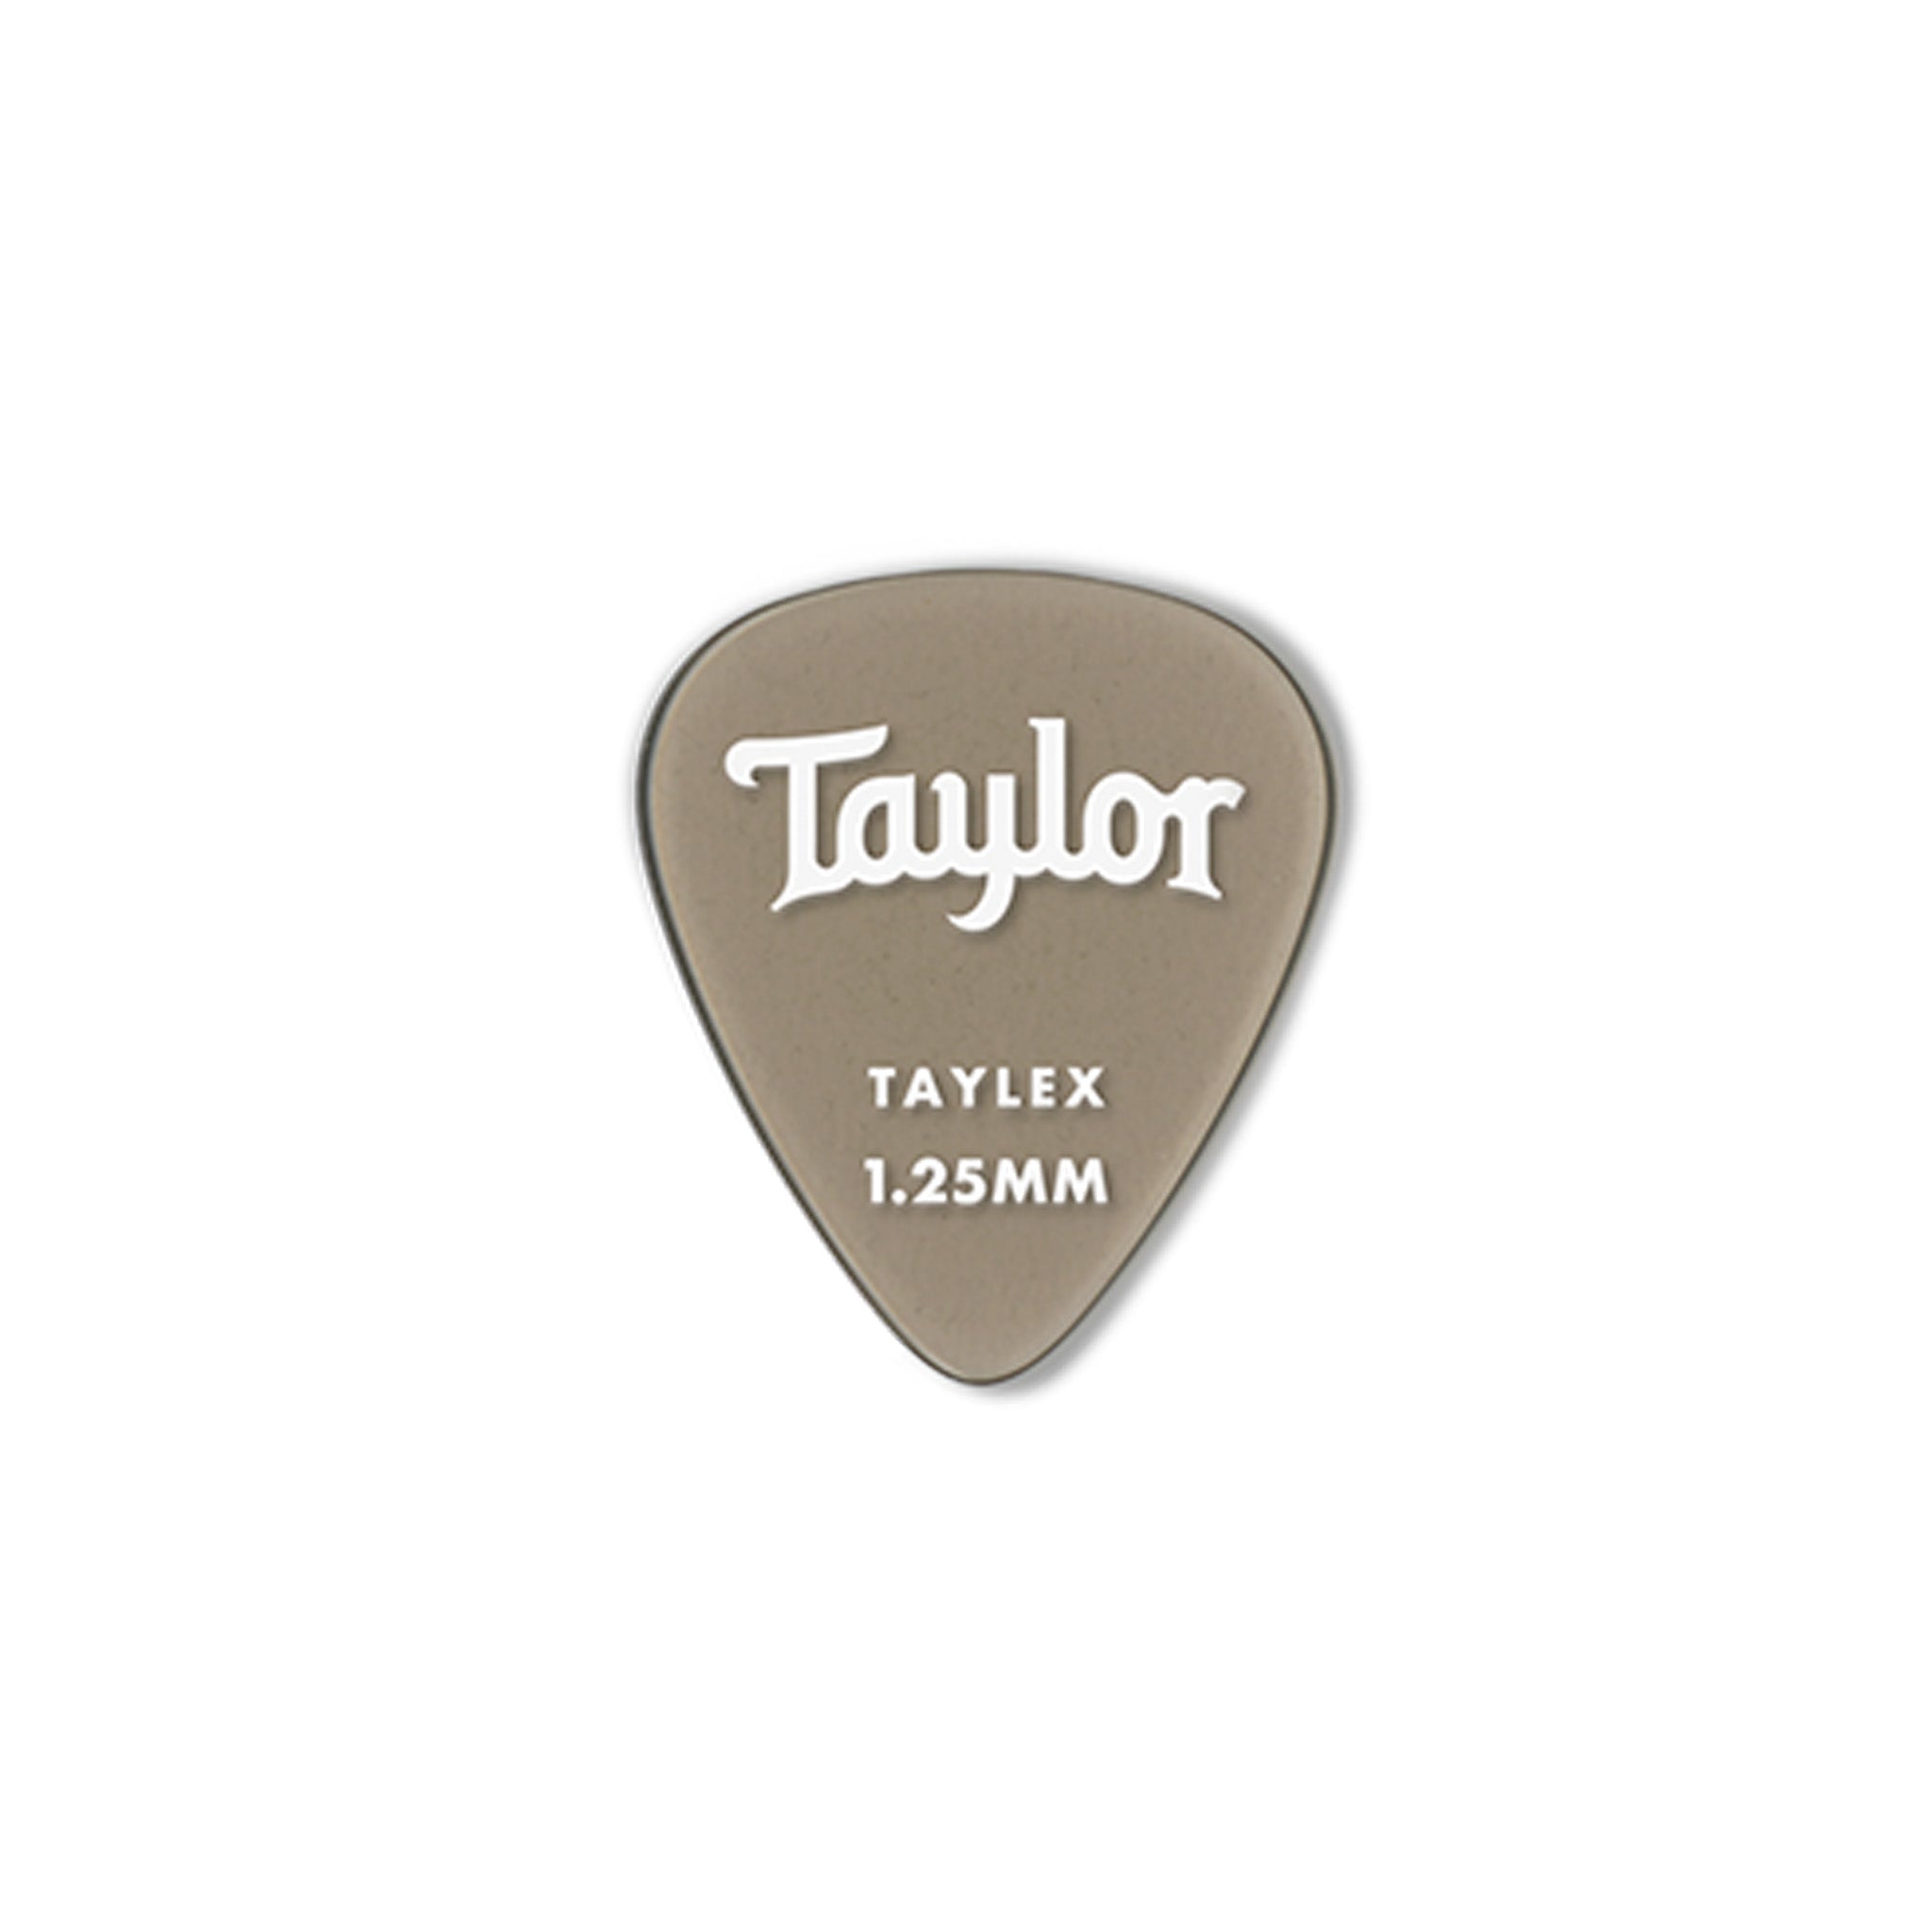 Taylor Premium 351 Taylex Guitar Picks - 1.25mm, 6-Pack